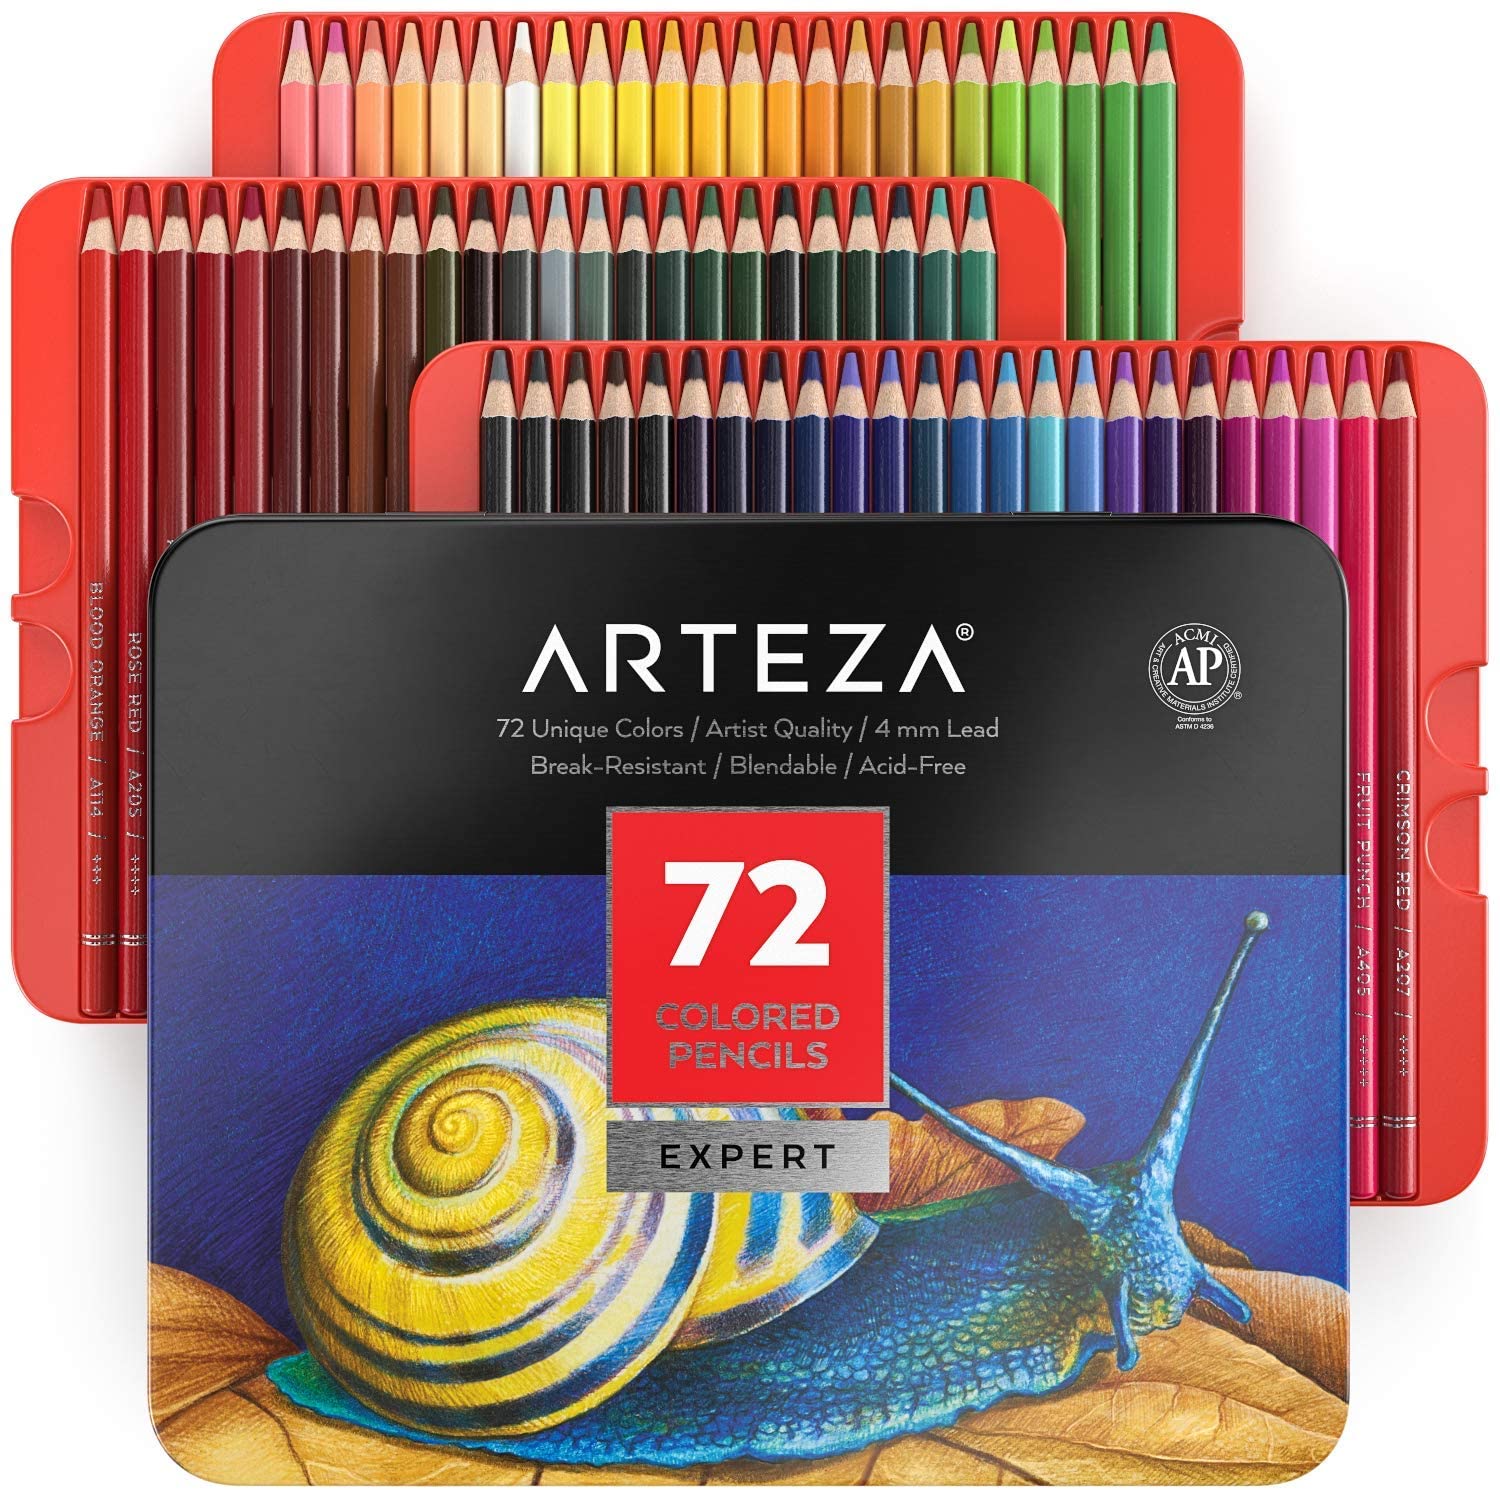 Arteza Pro Series Colored Pencils, 72-Count